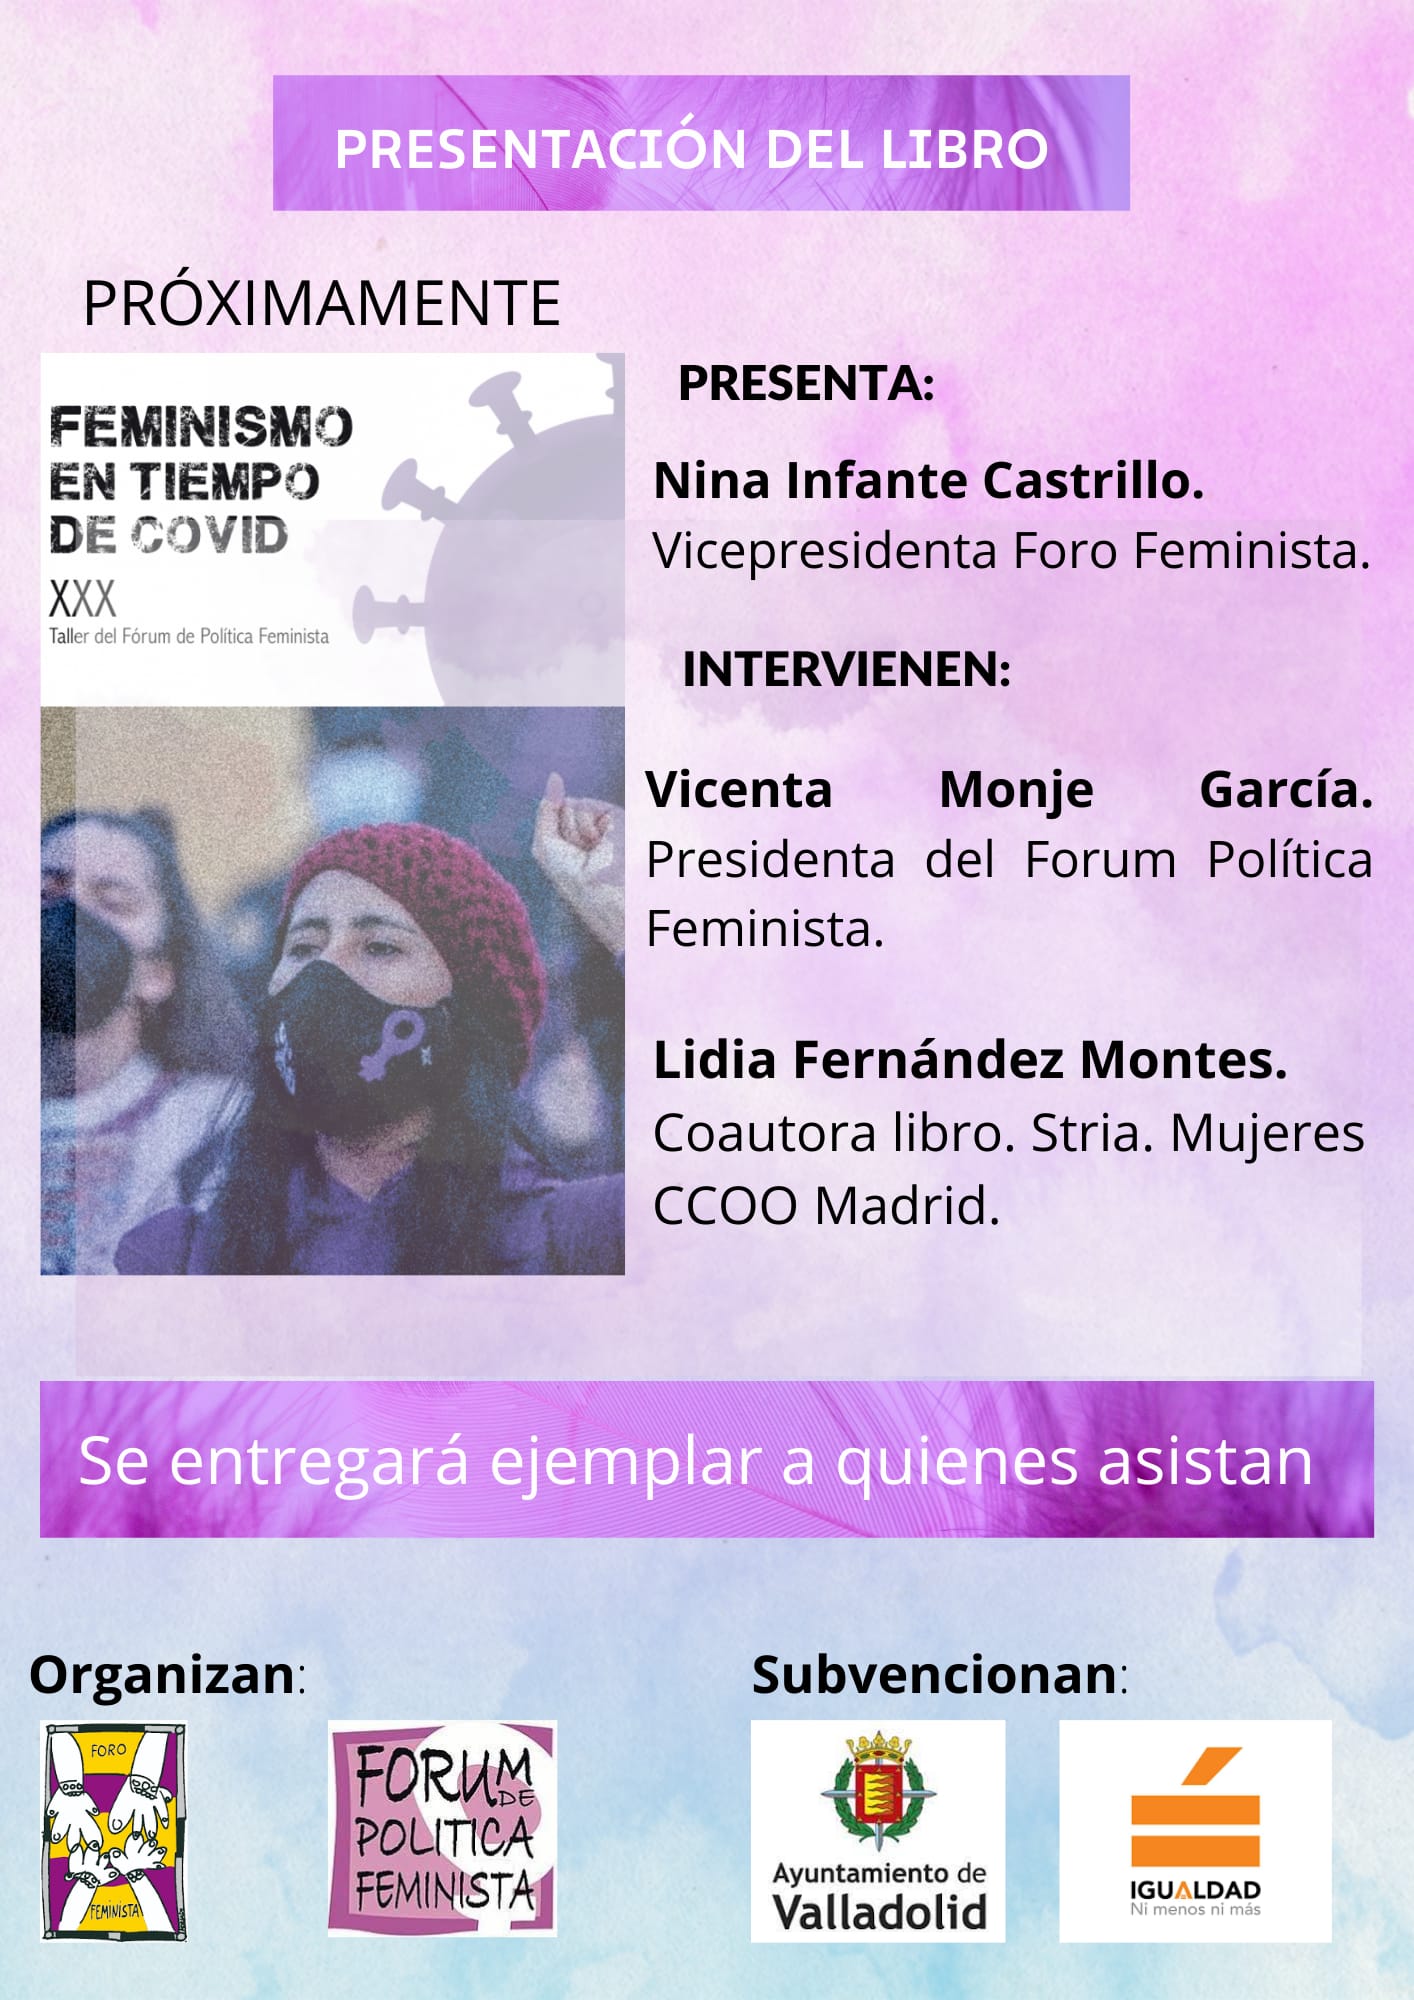 PRESENTACIÓN LIBRO: FEMINISMO EN TIEMPOS DE COVID